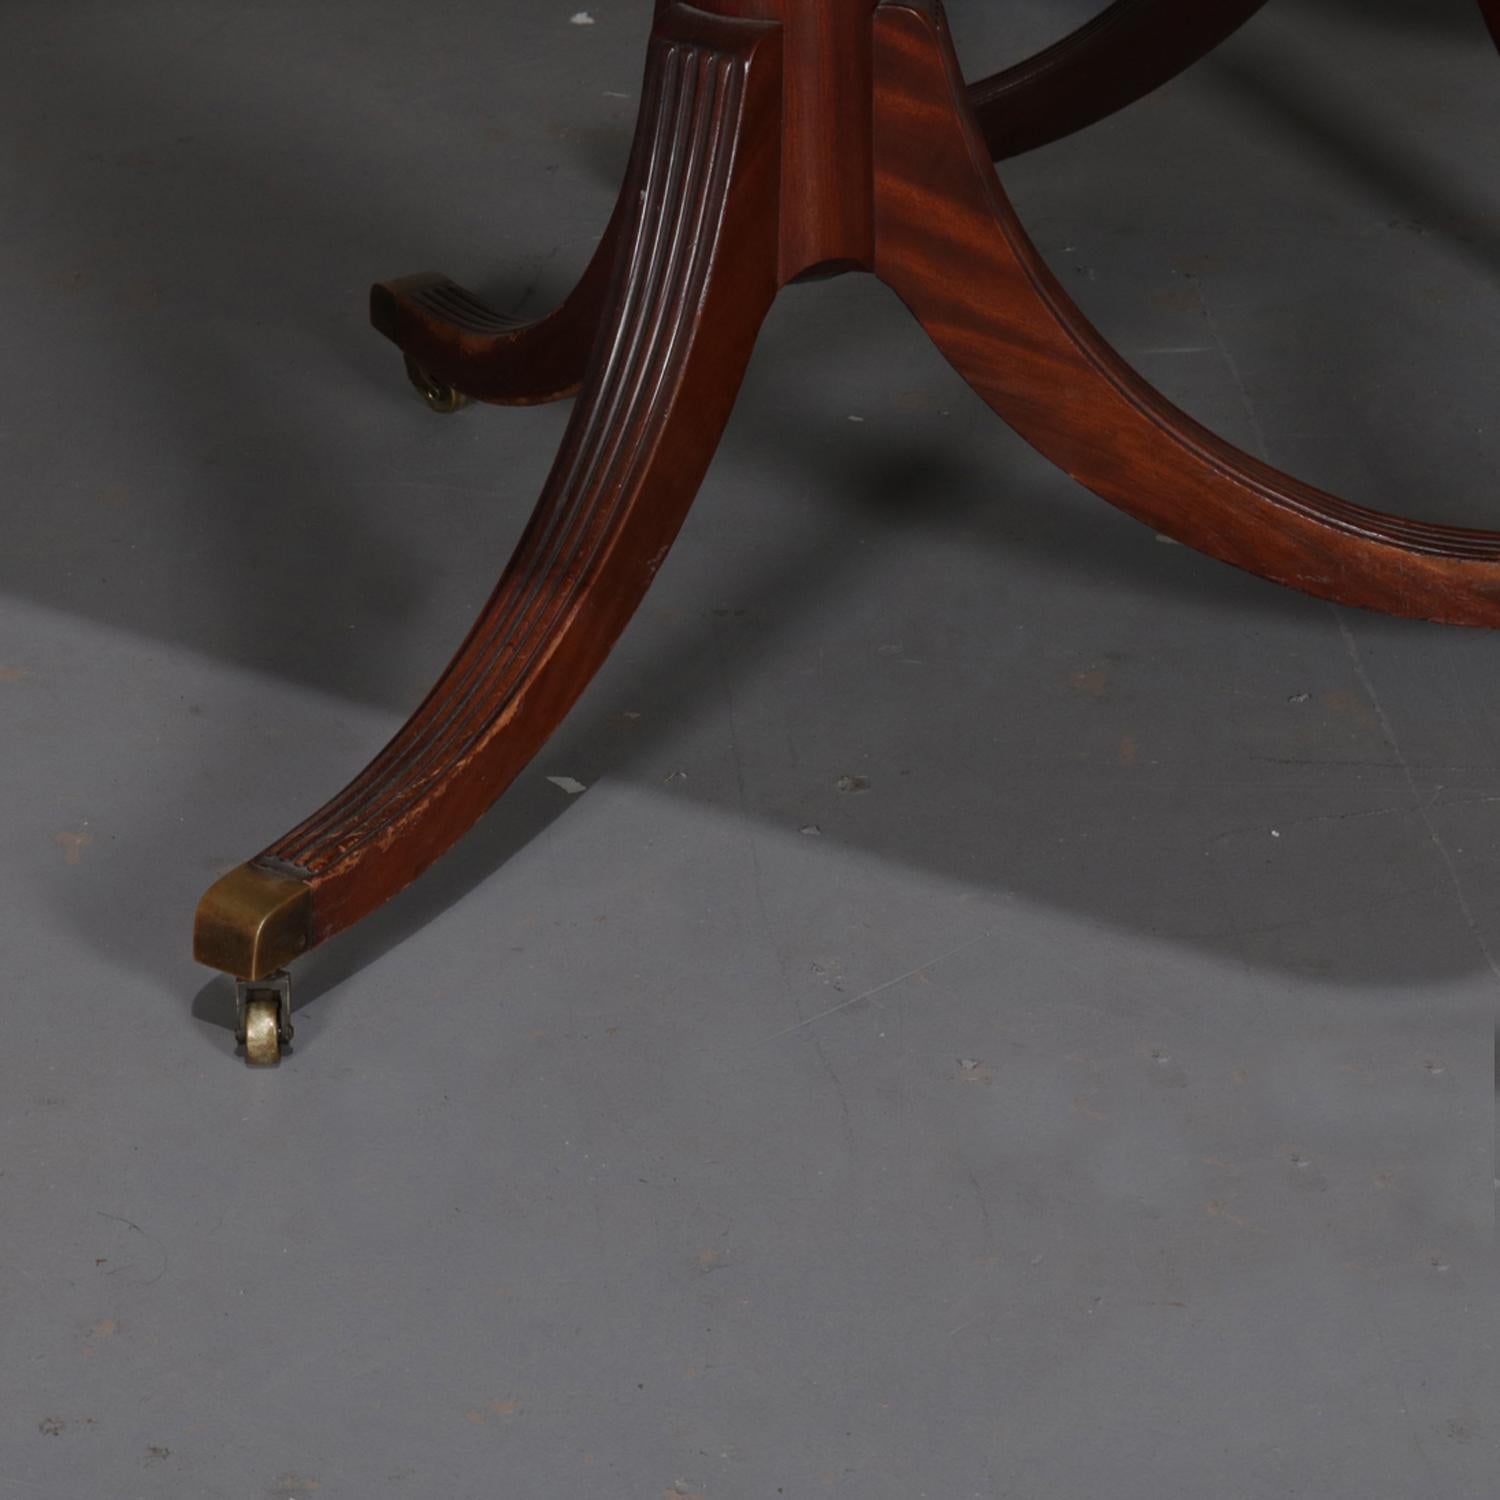 duncan phyfe table 1940s